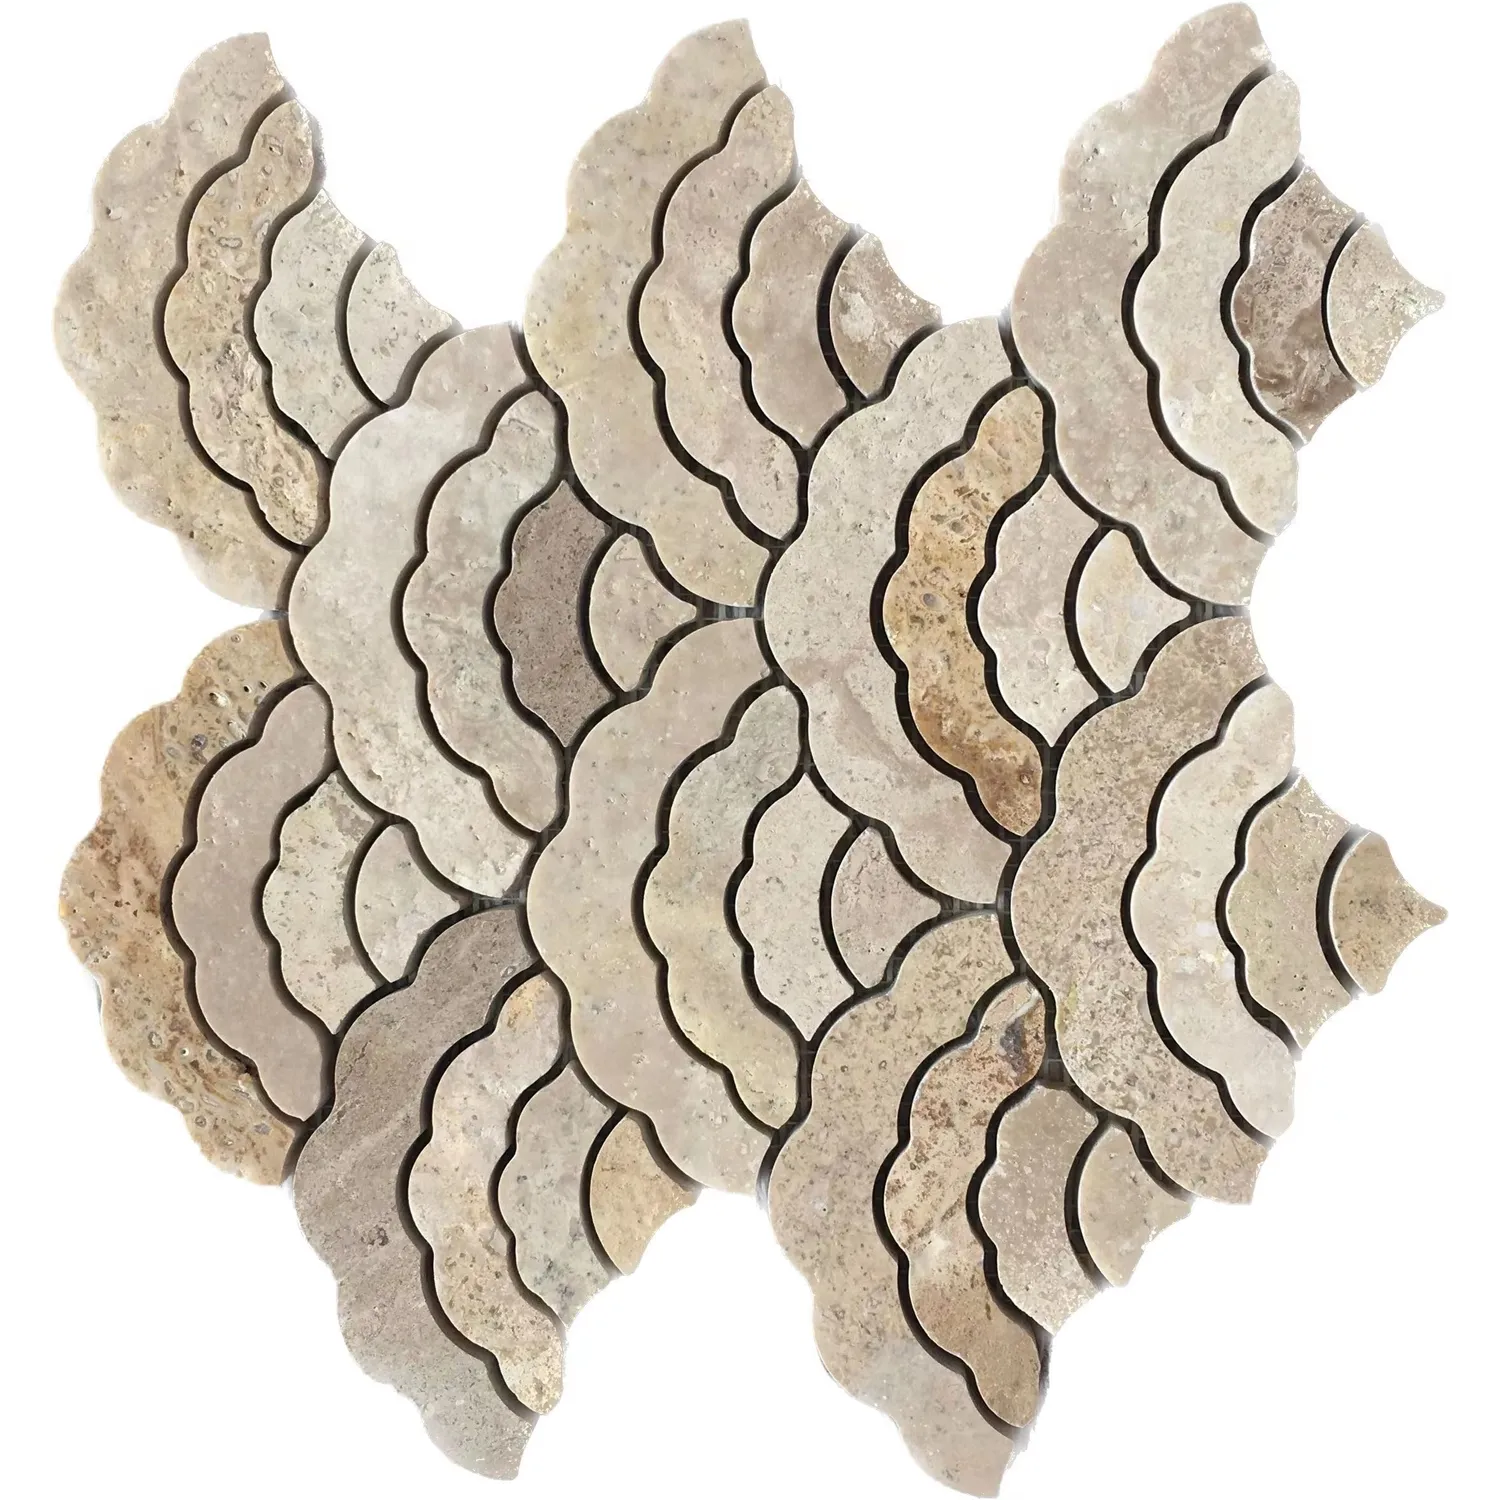 Tessere di mosaico di travertino Beige a forma di ventaglio popolare europeo per il modello a getto d'acqua della parete della doccia